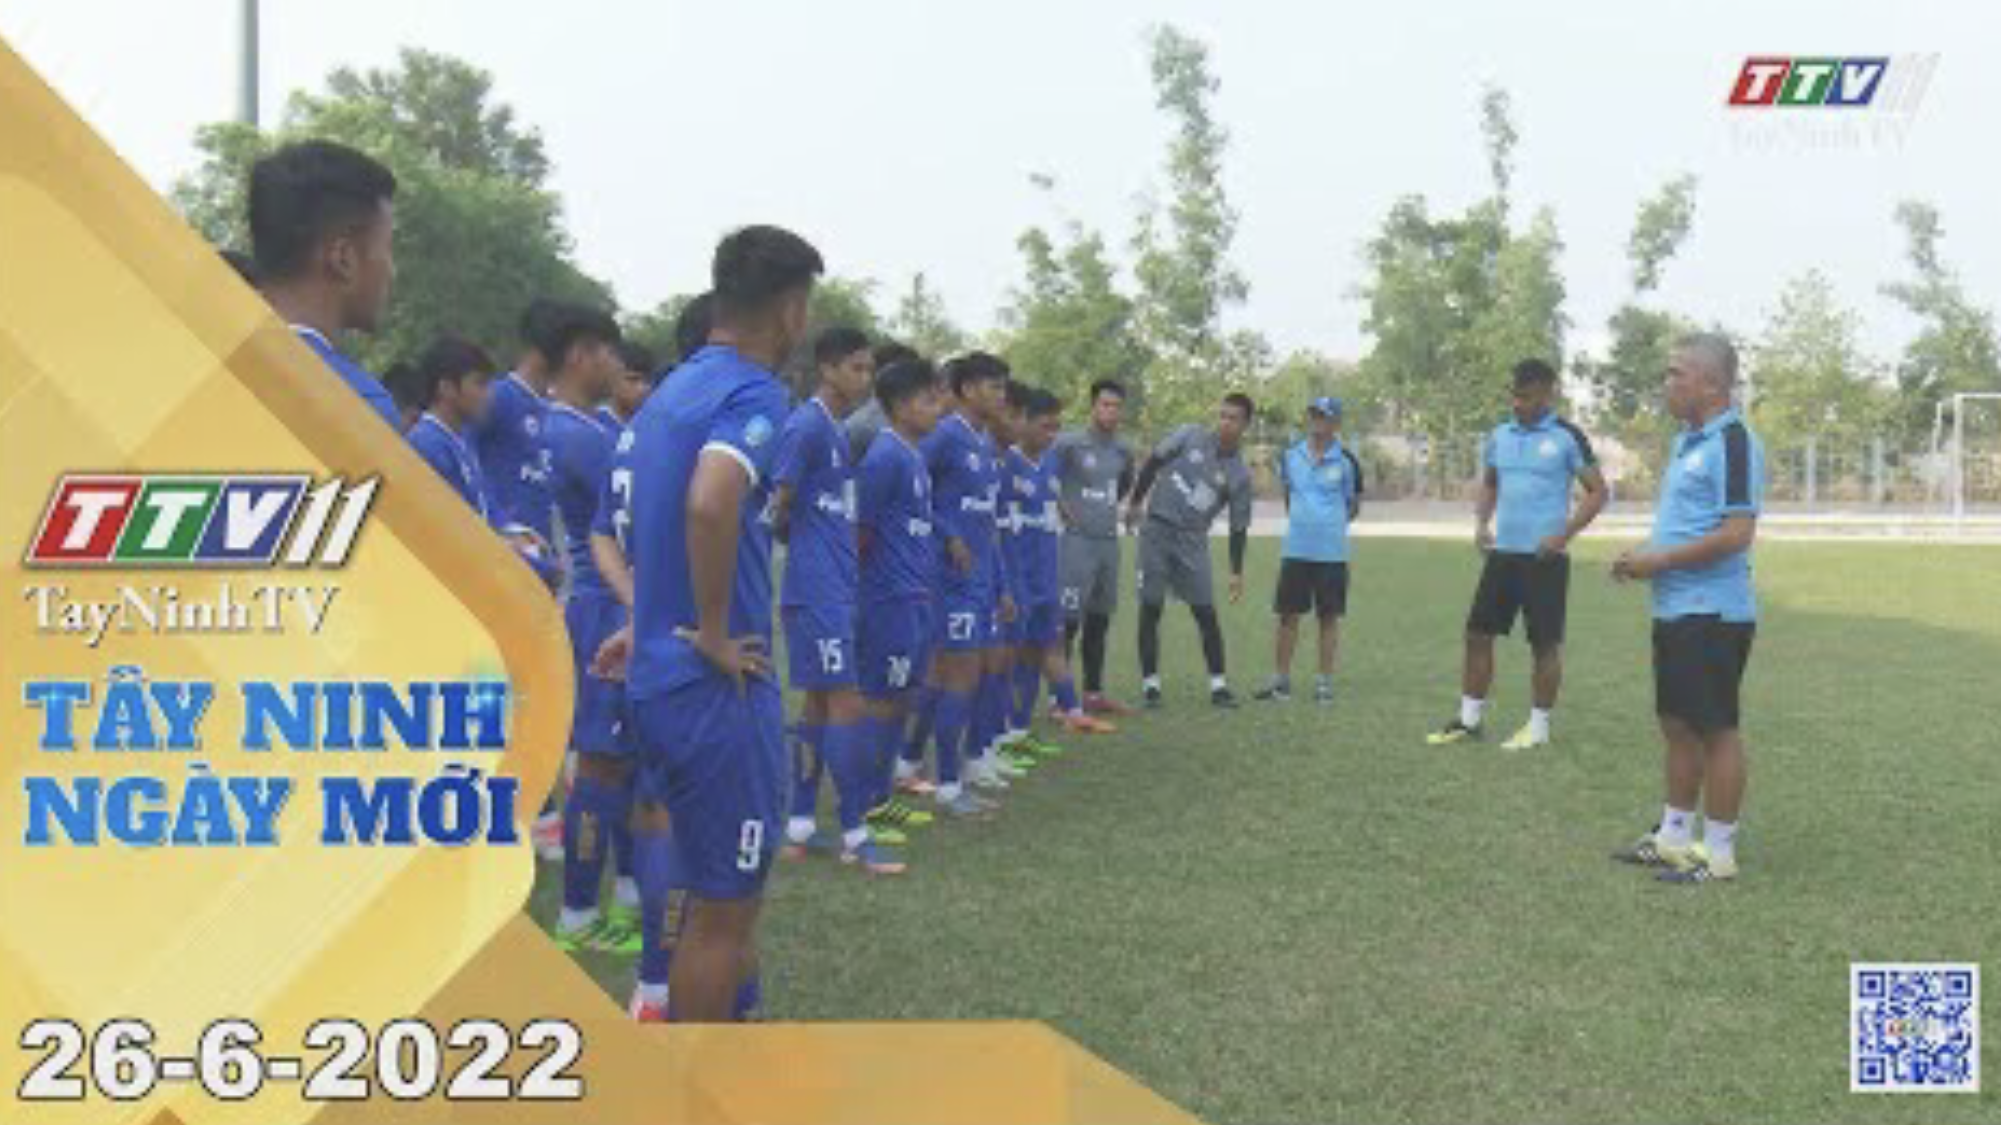 Tây Ninh ngày mới 26-6-2022 | Tin tức hôm nay | TayNinhTV